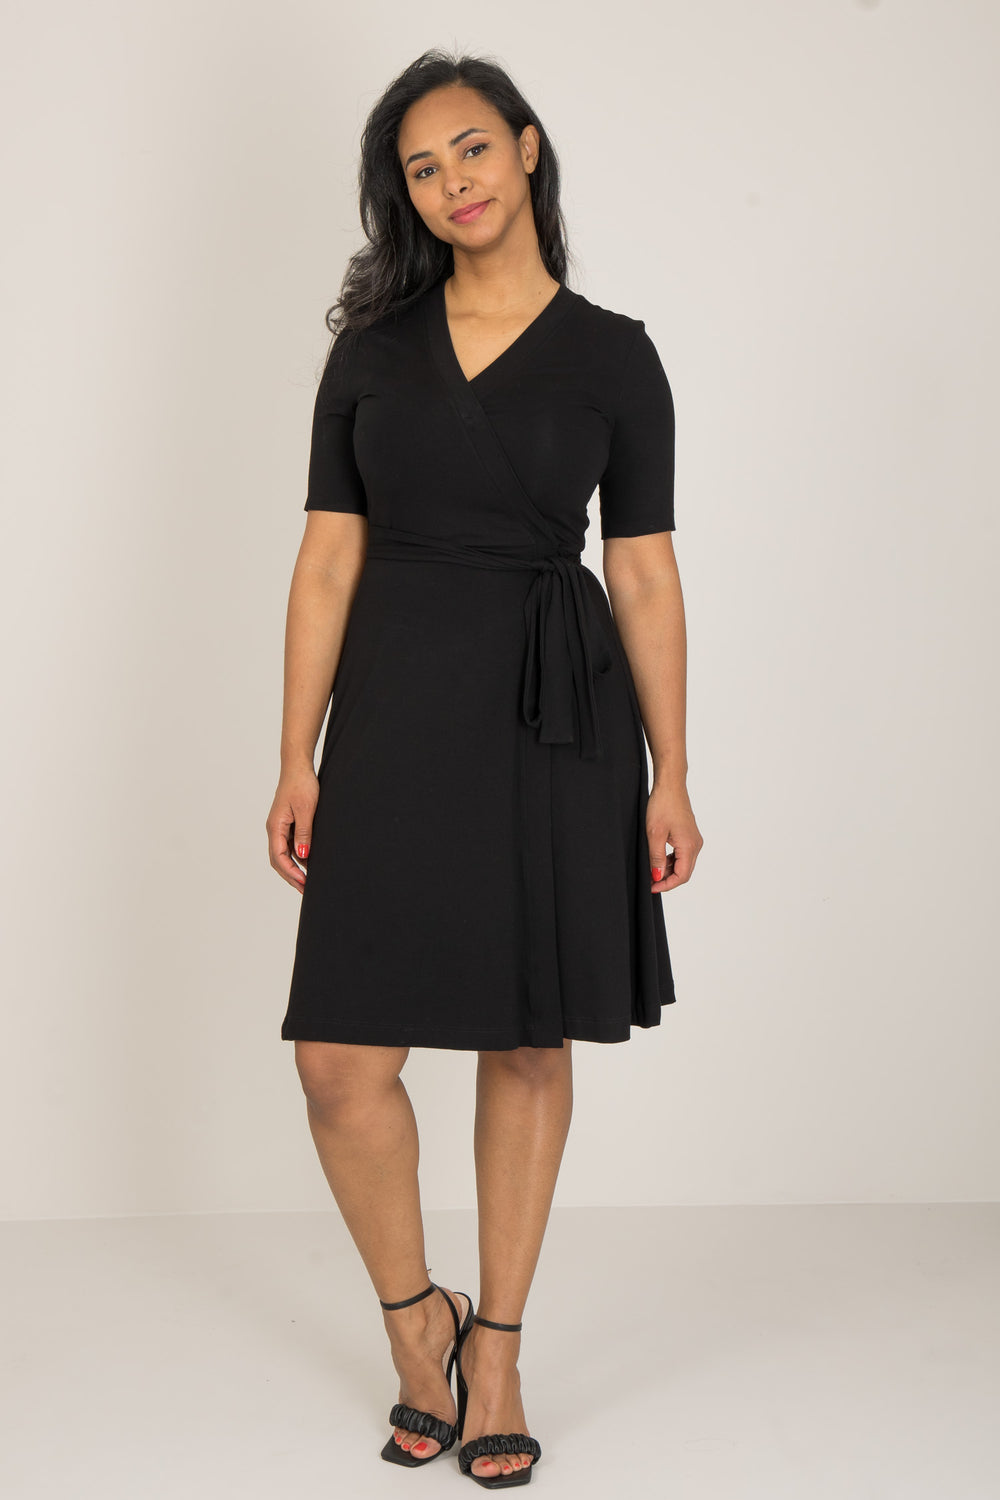 Bestie short wrap short sleeve jersey dress - Black - Knälång, kortärmad omlottklänning i trikå